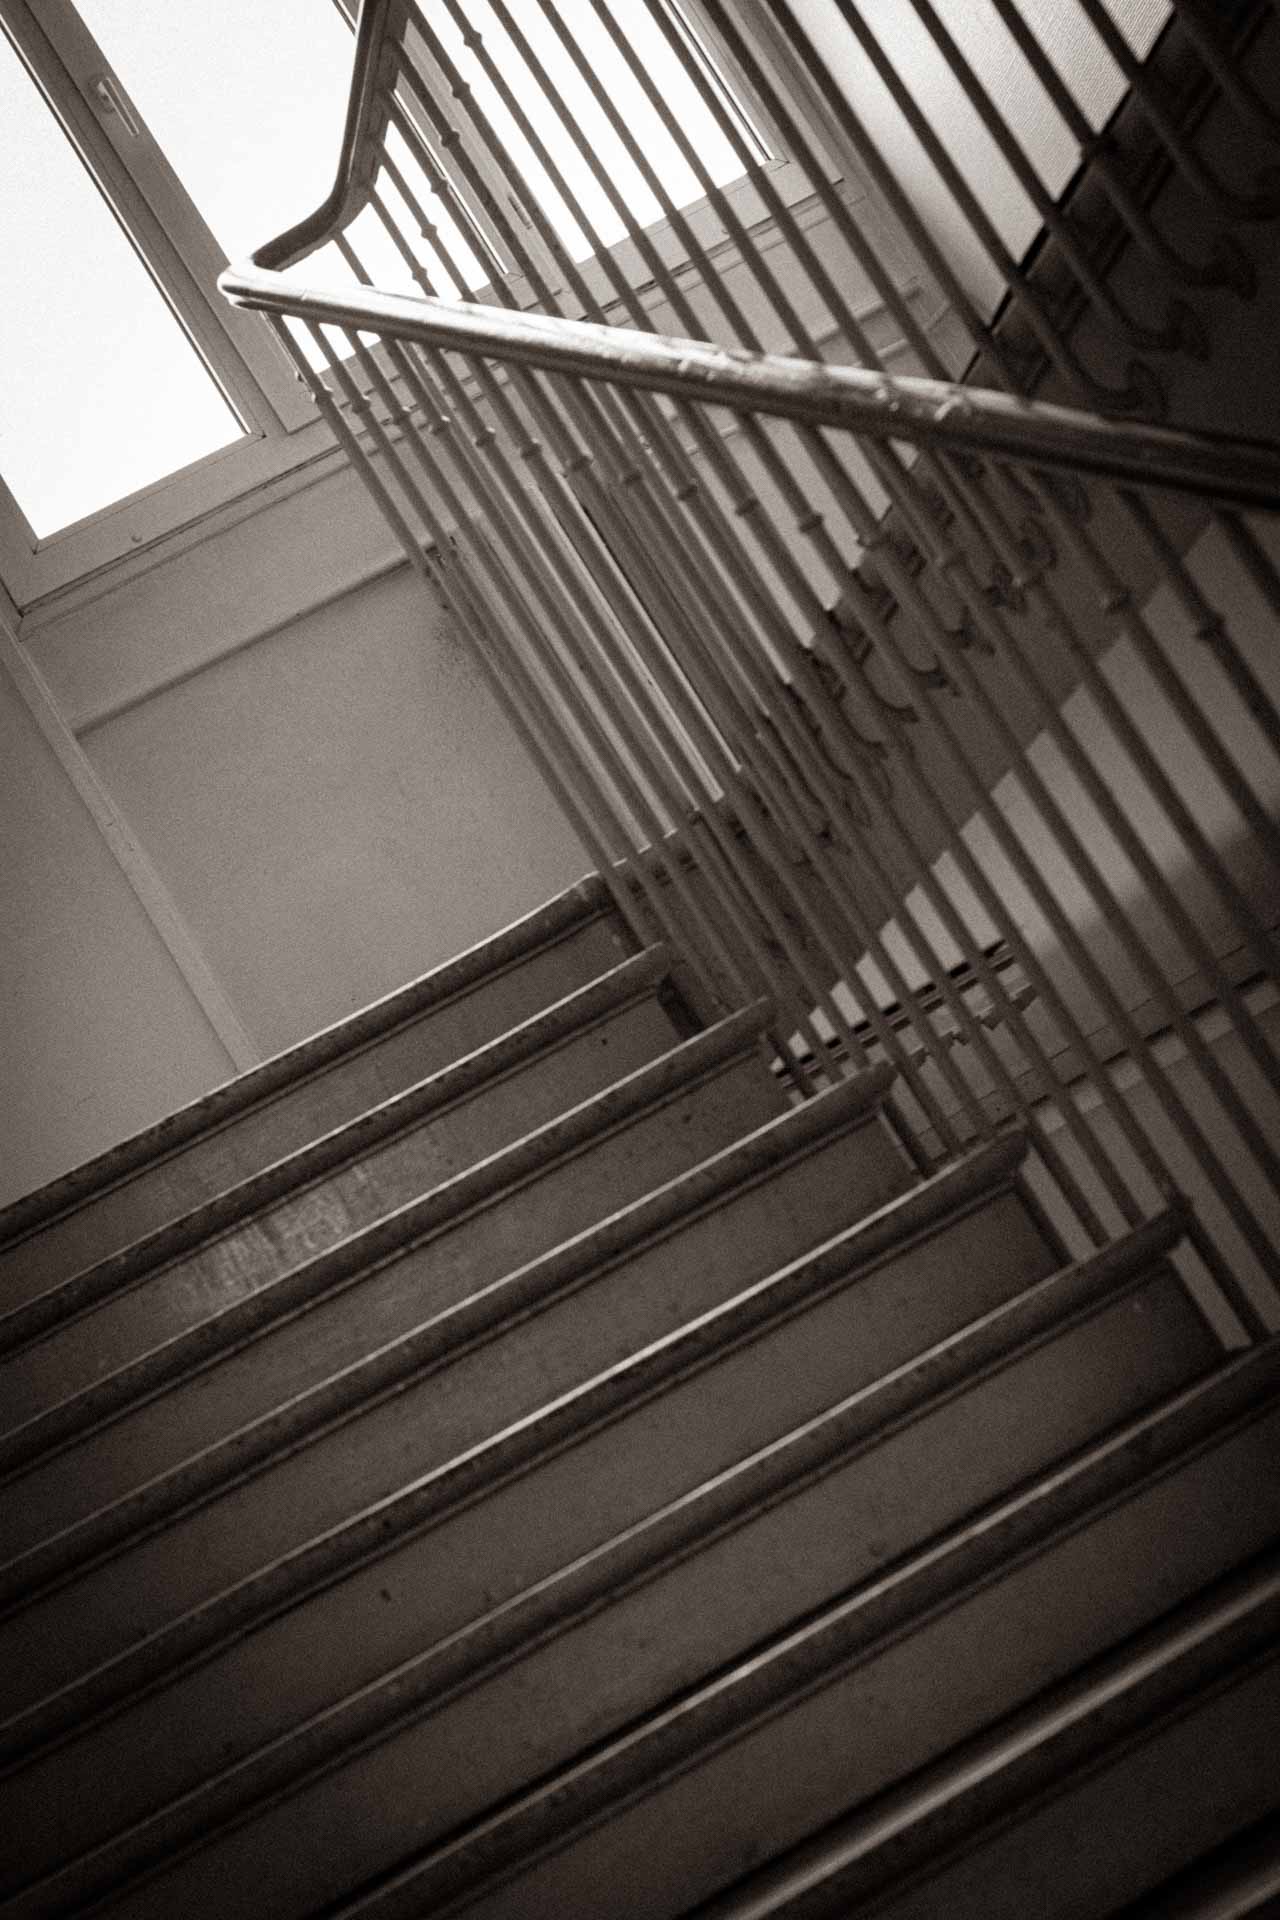 Un escalier dans une école - photo nommée escalier issue de la série l'école désertée par Laure Cartel